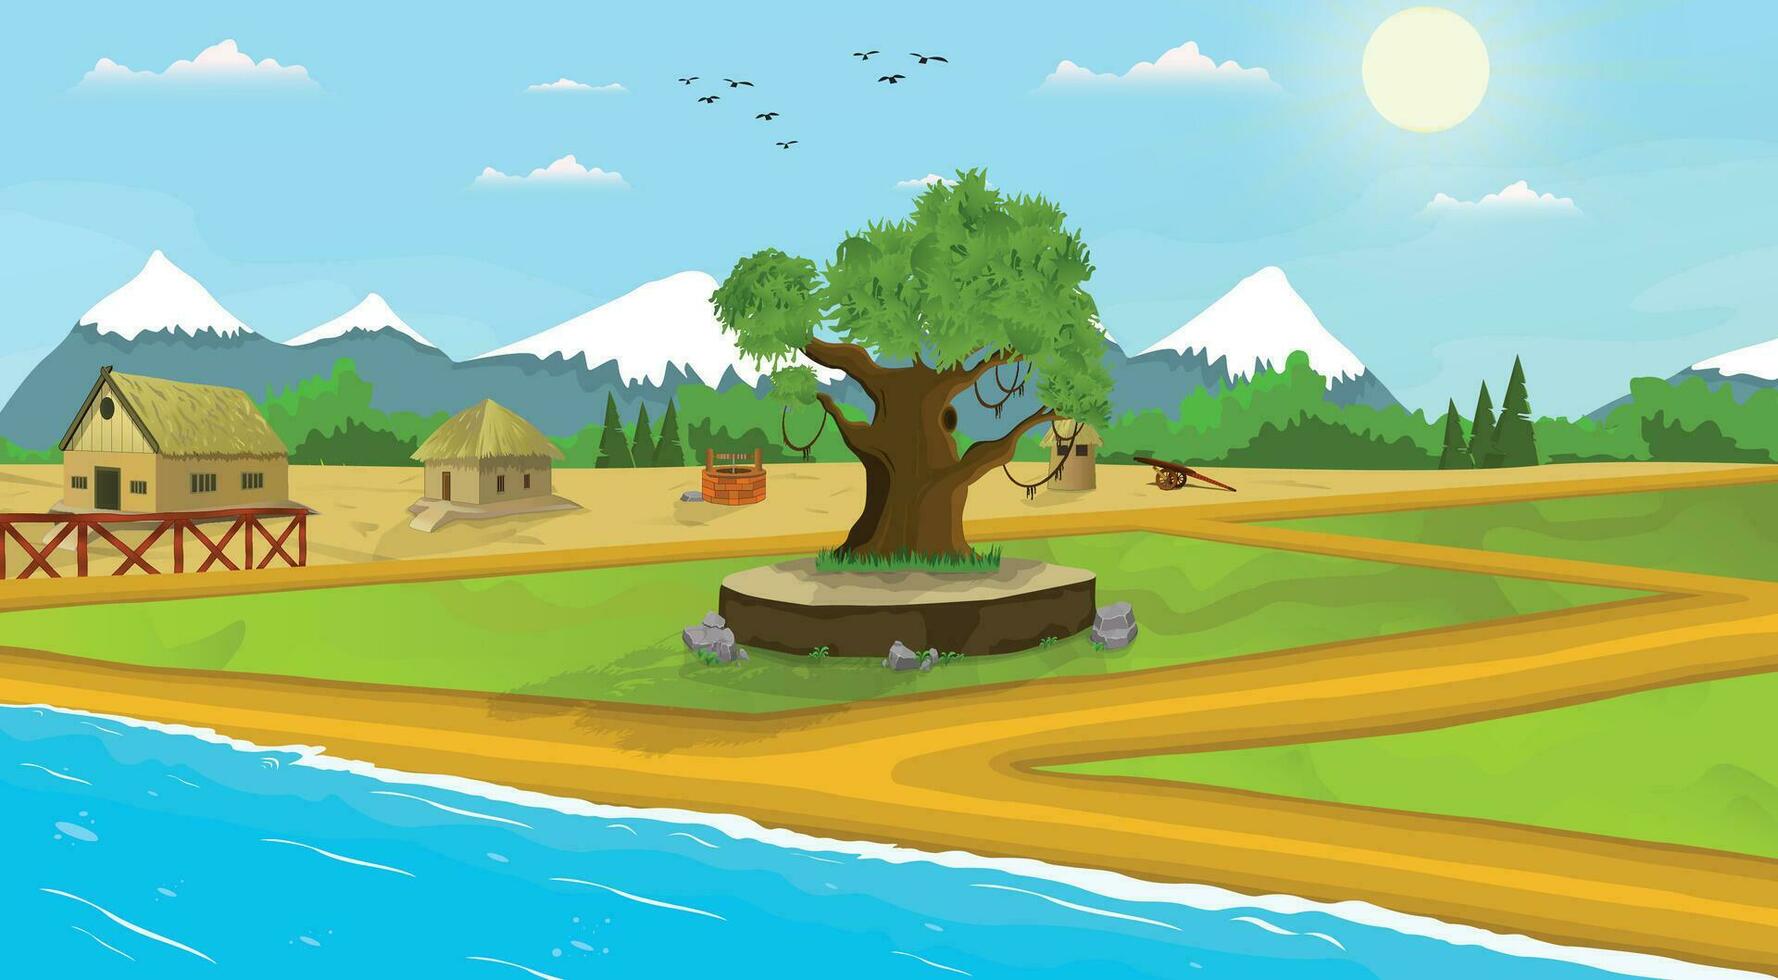 Asia pueblo ilustración dibujos animados antecedentes de verde prados, campo área, granjero casas y rodeado por arboles y montañas. vector